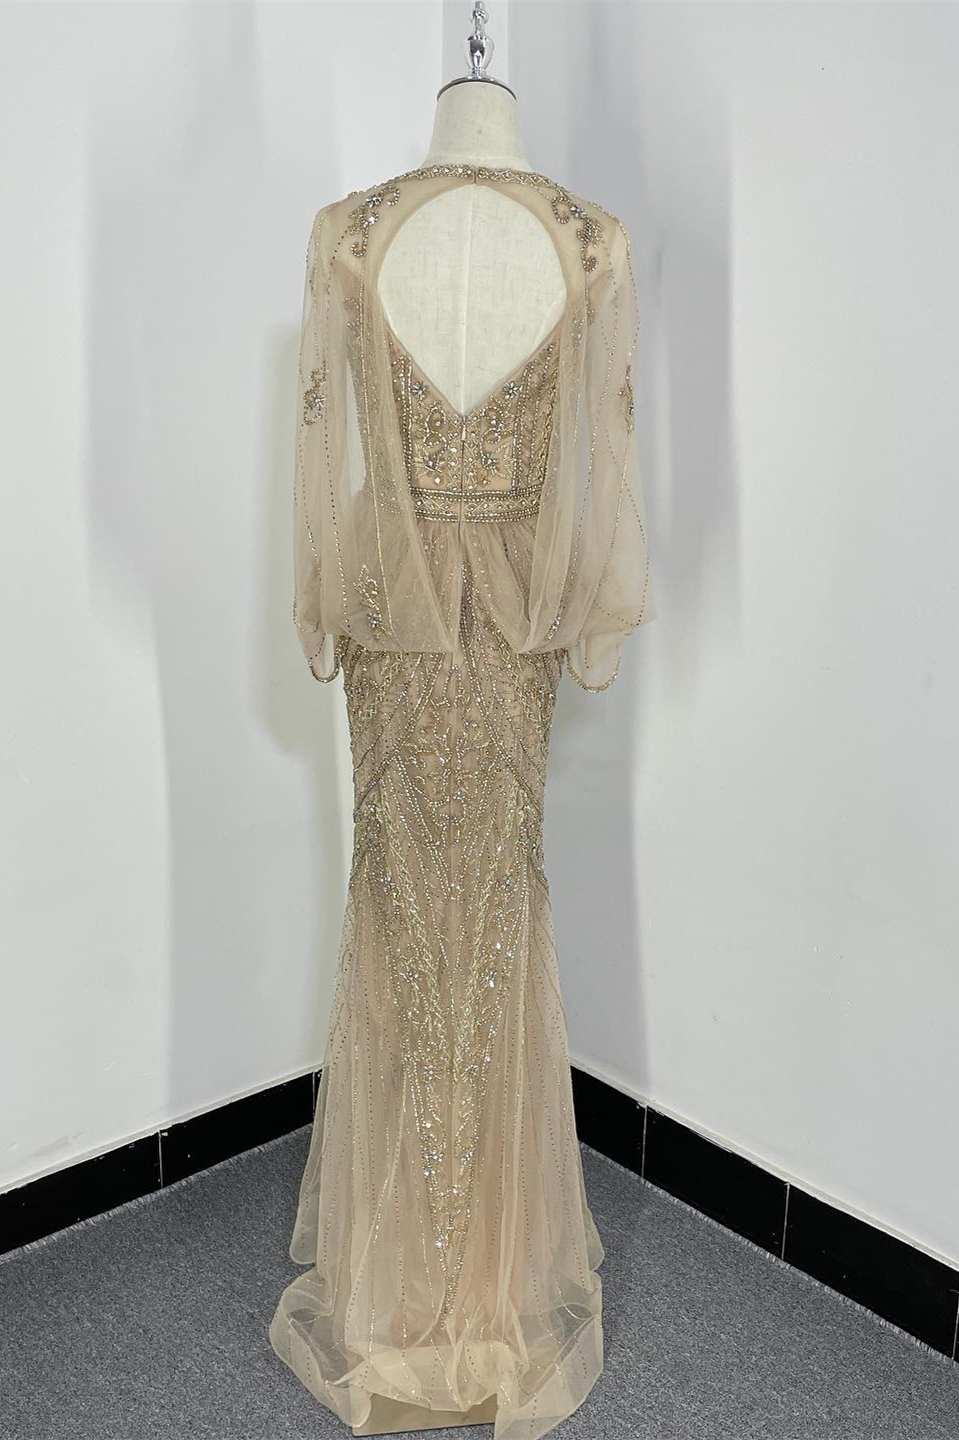 Langes, formelles Kleid im Meerjungfrau-Stil mit Champagnerperlen, geteiltem Ausschnitt und Umhang